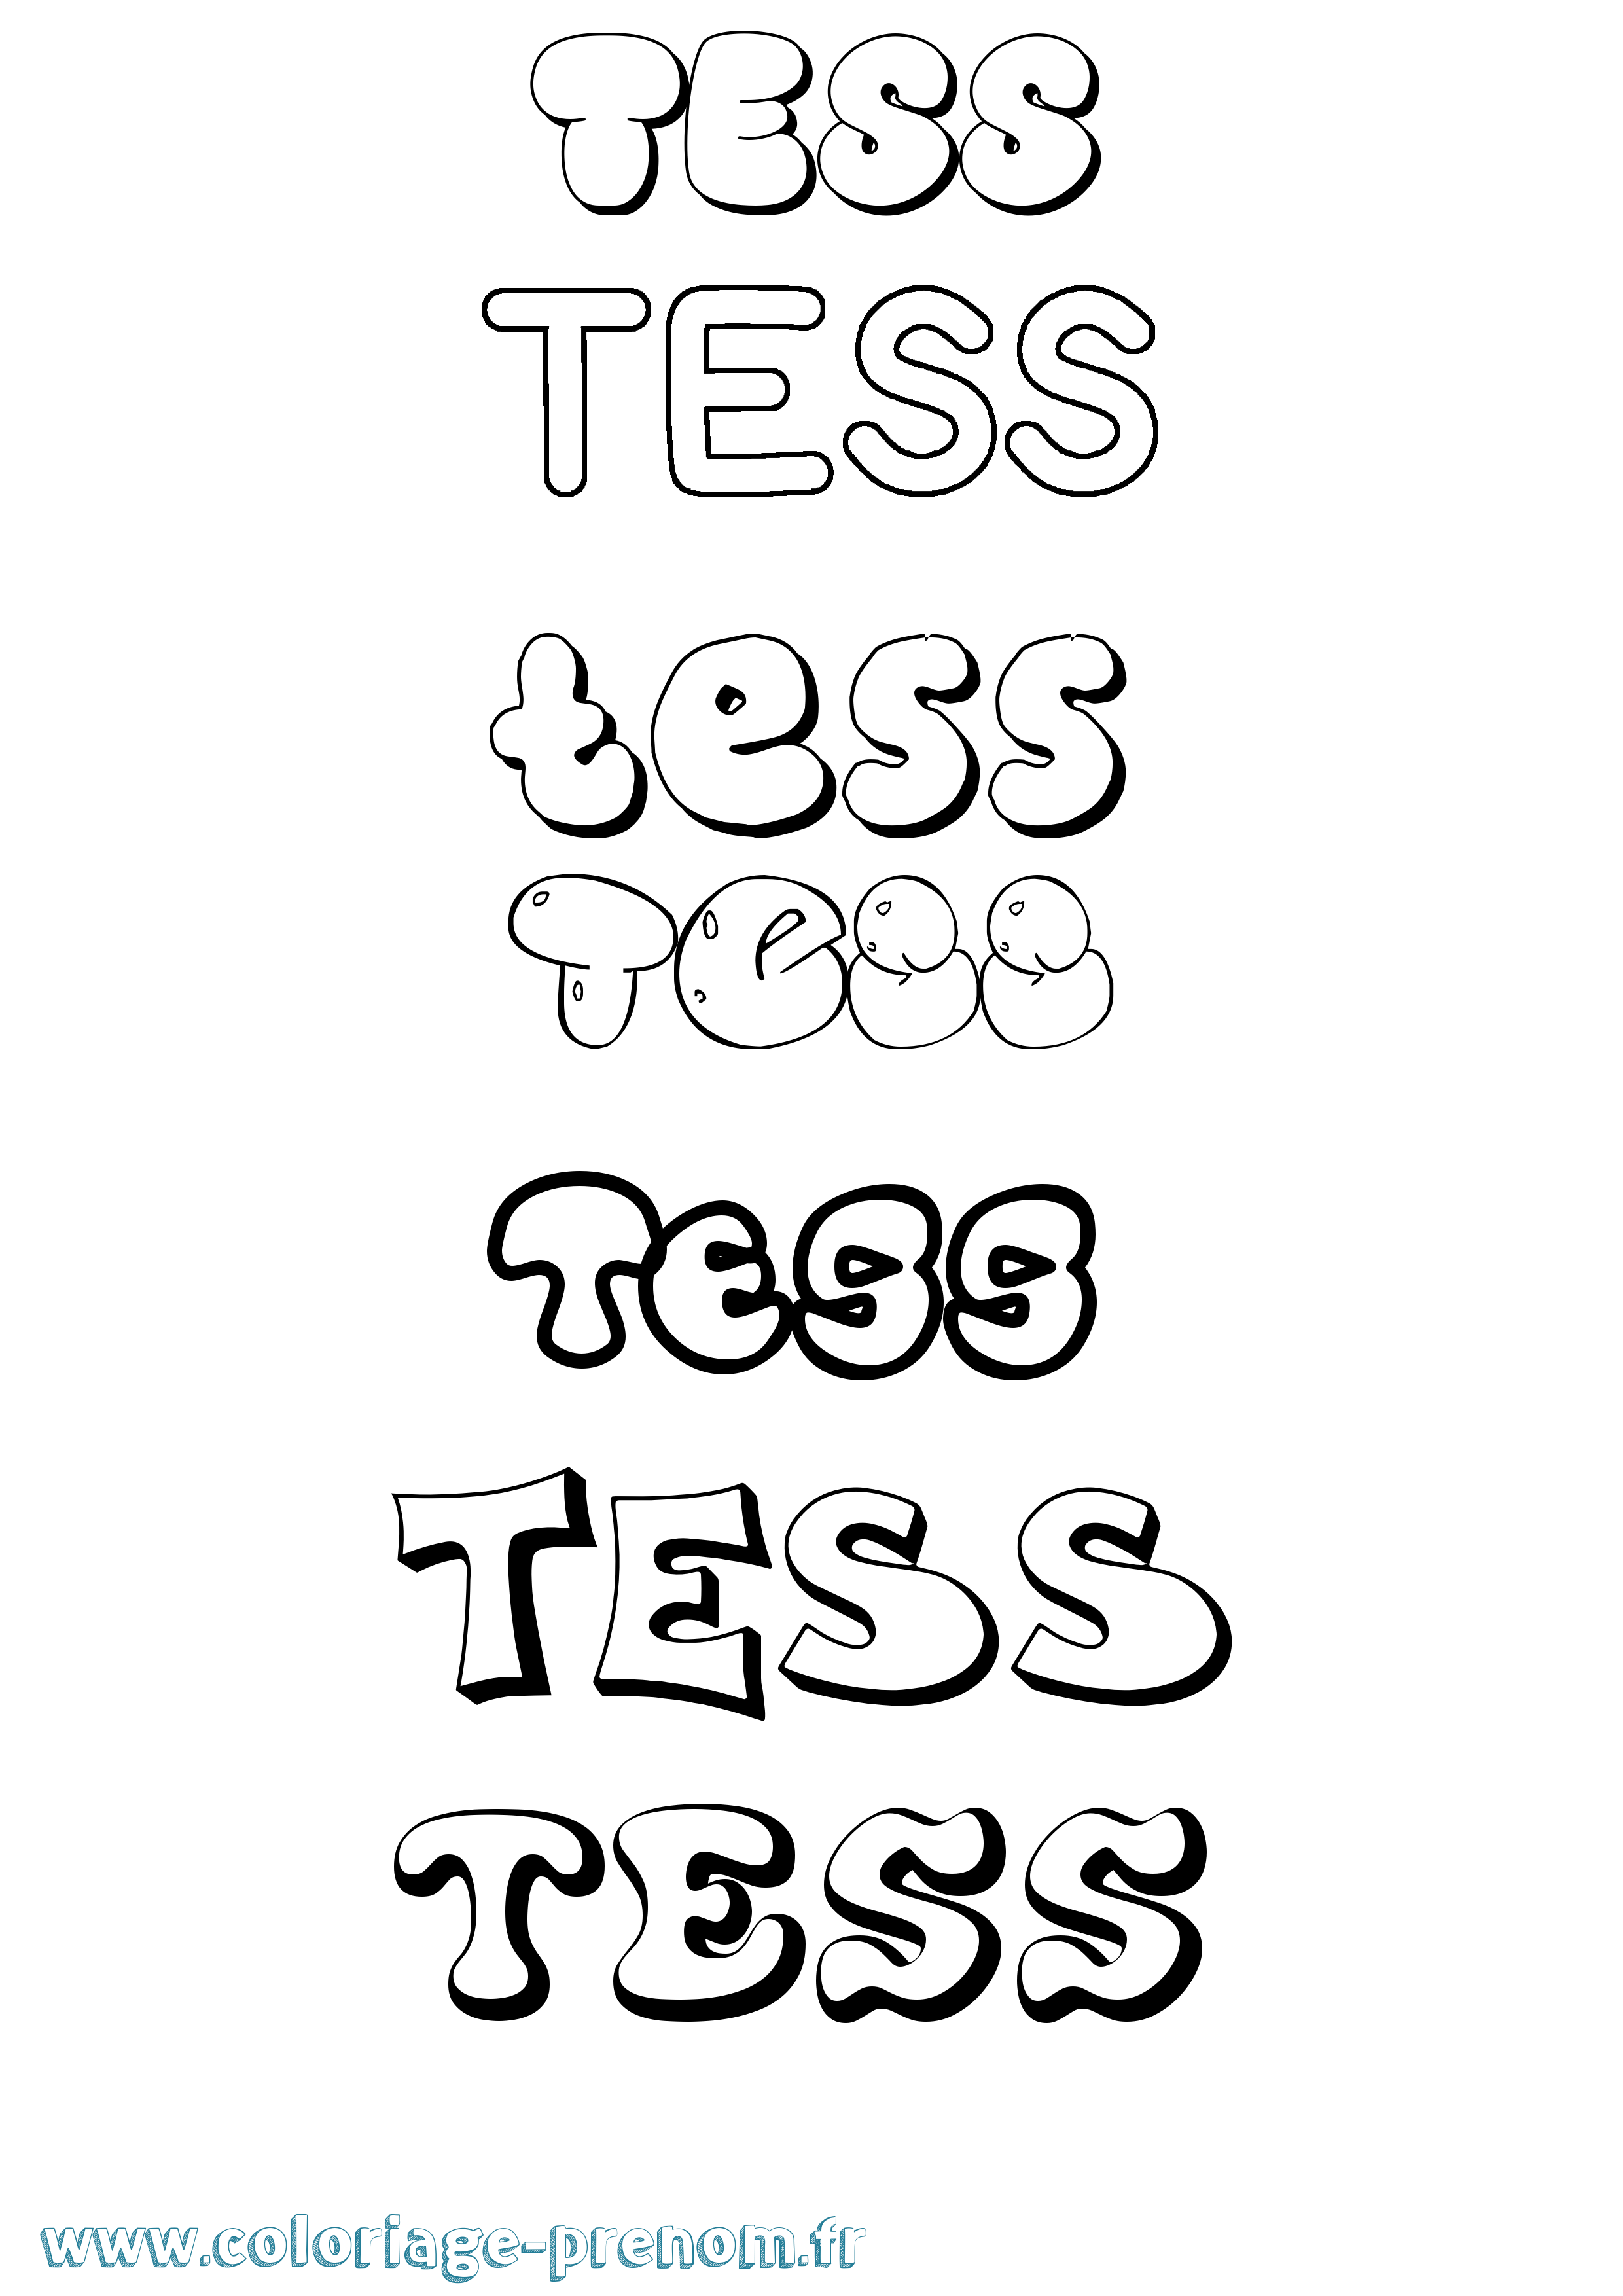 Coloriage prénom Tess Bubble